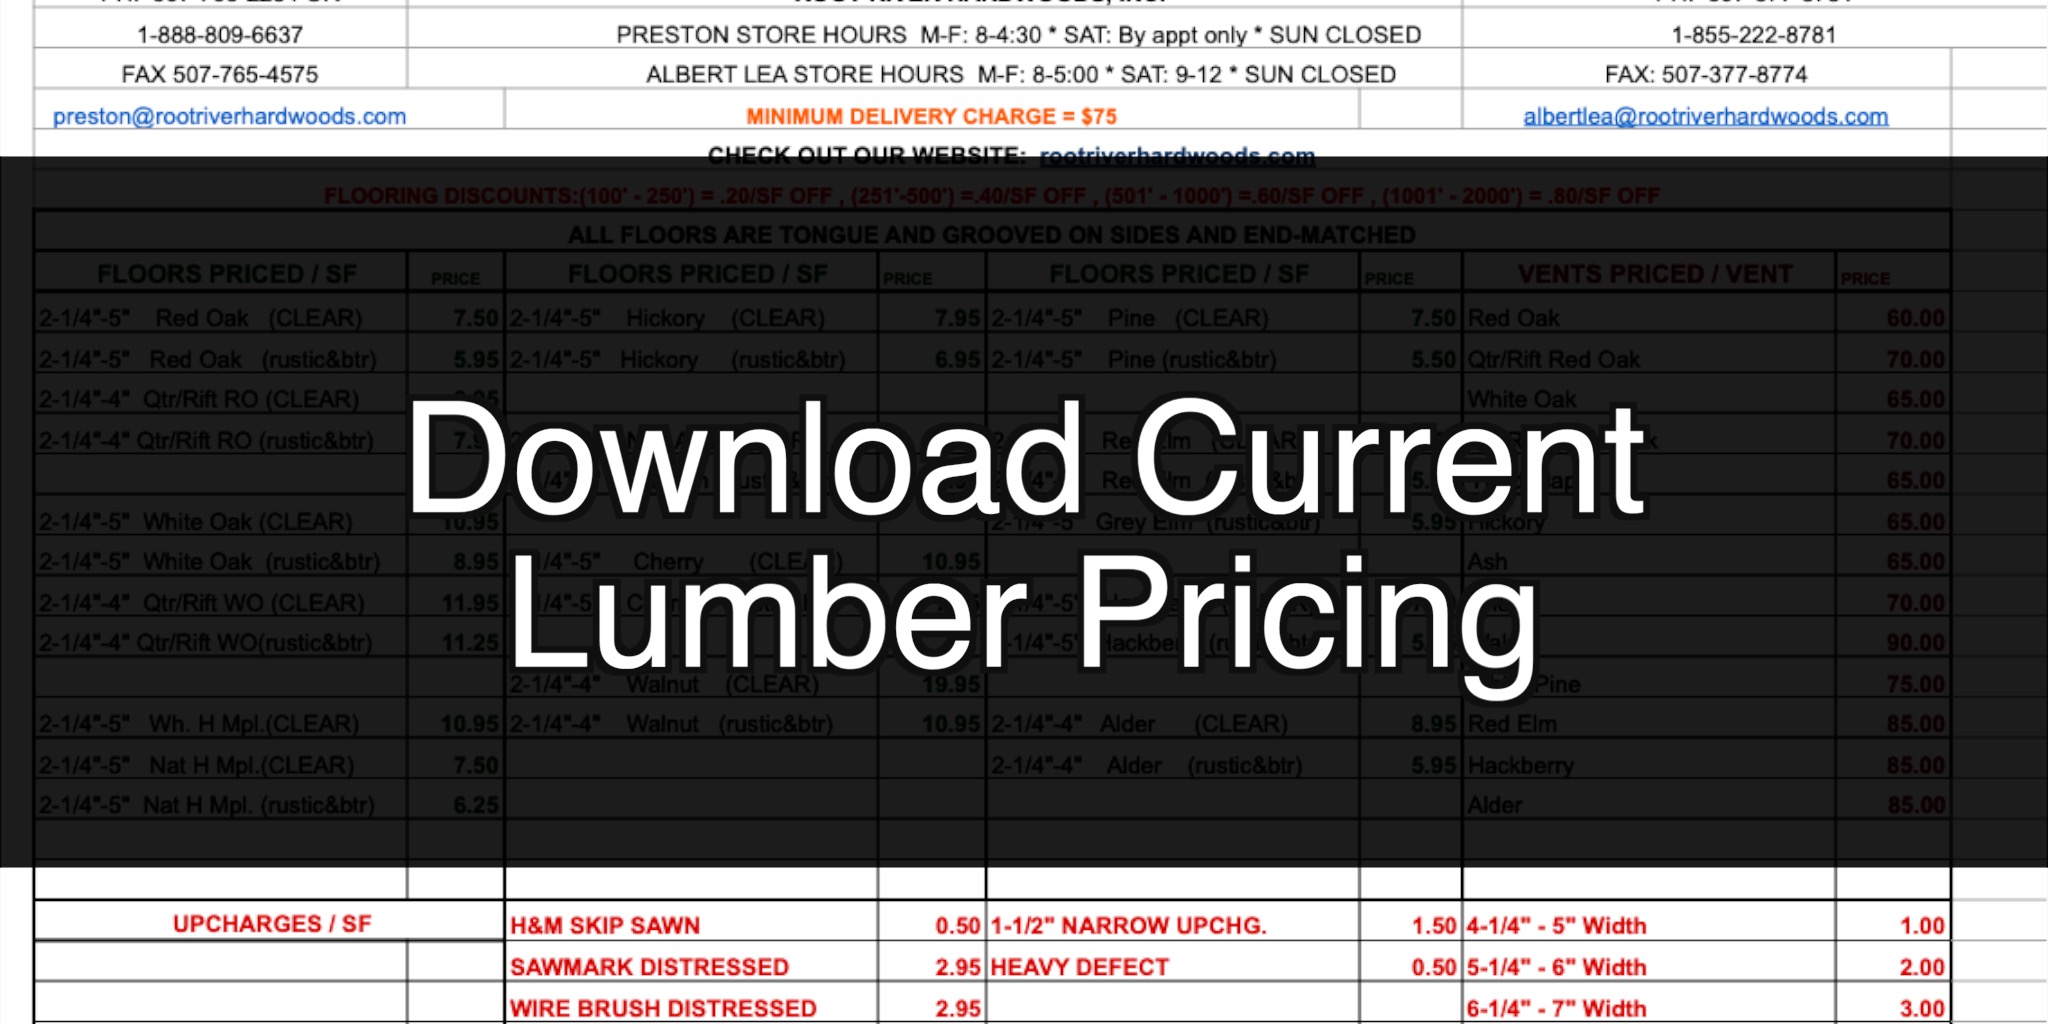 Lumber Pricing